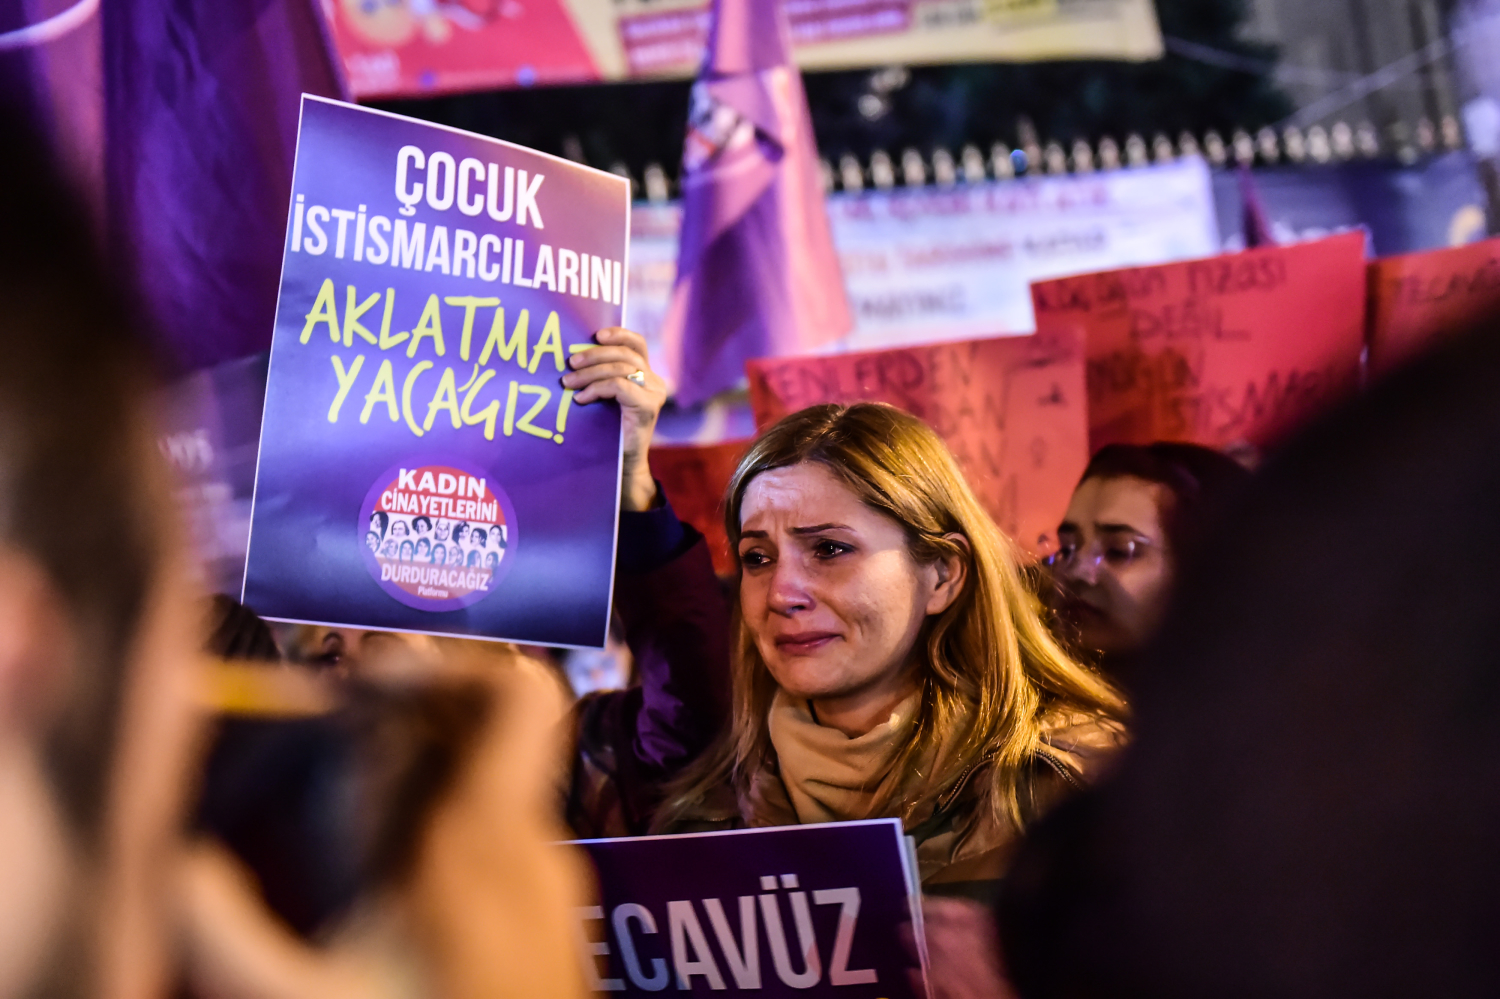 Turquía retira el proyecto de ley que perdonaba las violaciones a menores si había matrimonio